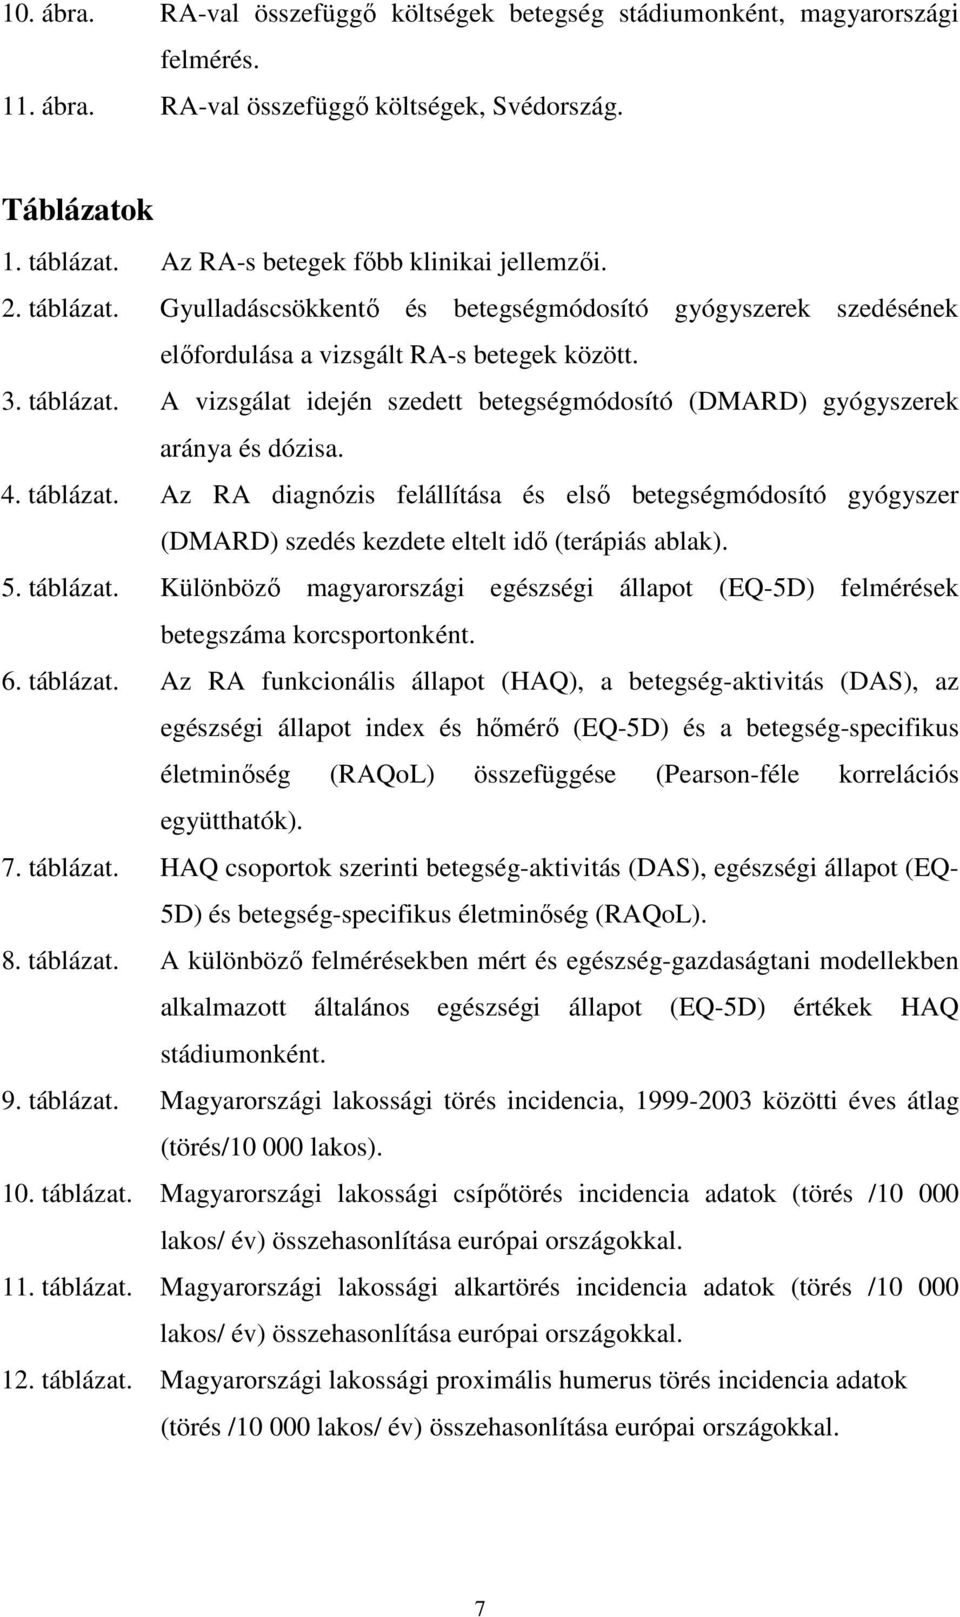 4. táblázat. Az RA diagnózis felállítása és elsı betegségmódosító gyógyszer (DMARD) szedés kezdete eltelt idı (terápiás ablak). 5. táblázat. Különbözı magyarországi egészségi állapot (EQ-5D) felmérések betegszáma korcsportonként.